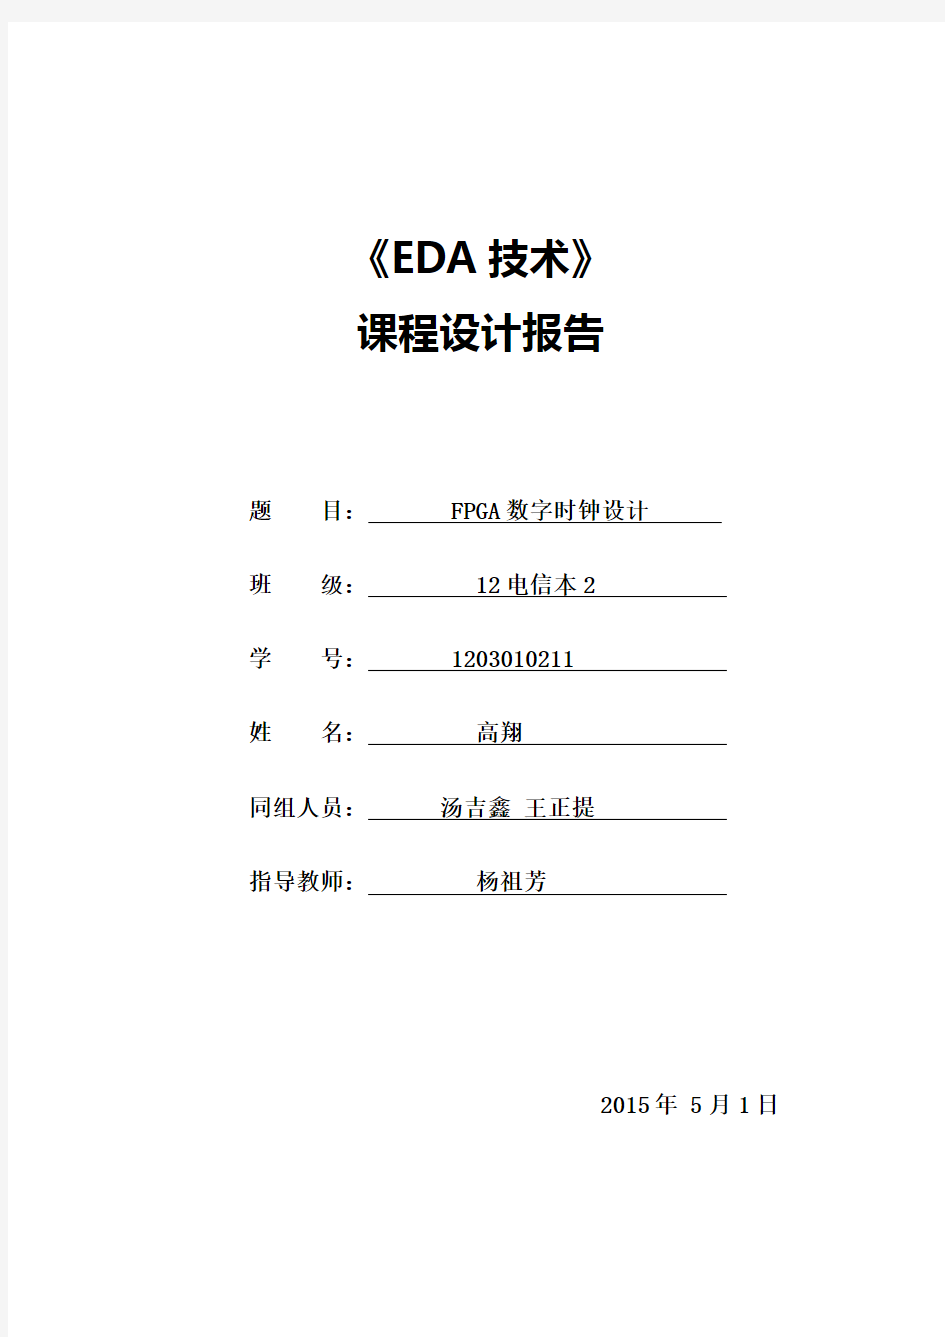 eda课程设计1203010